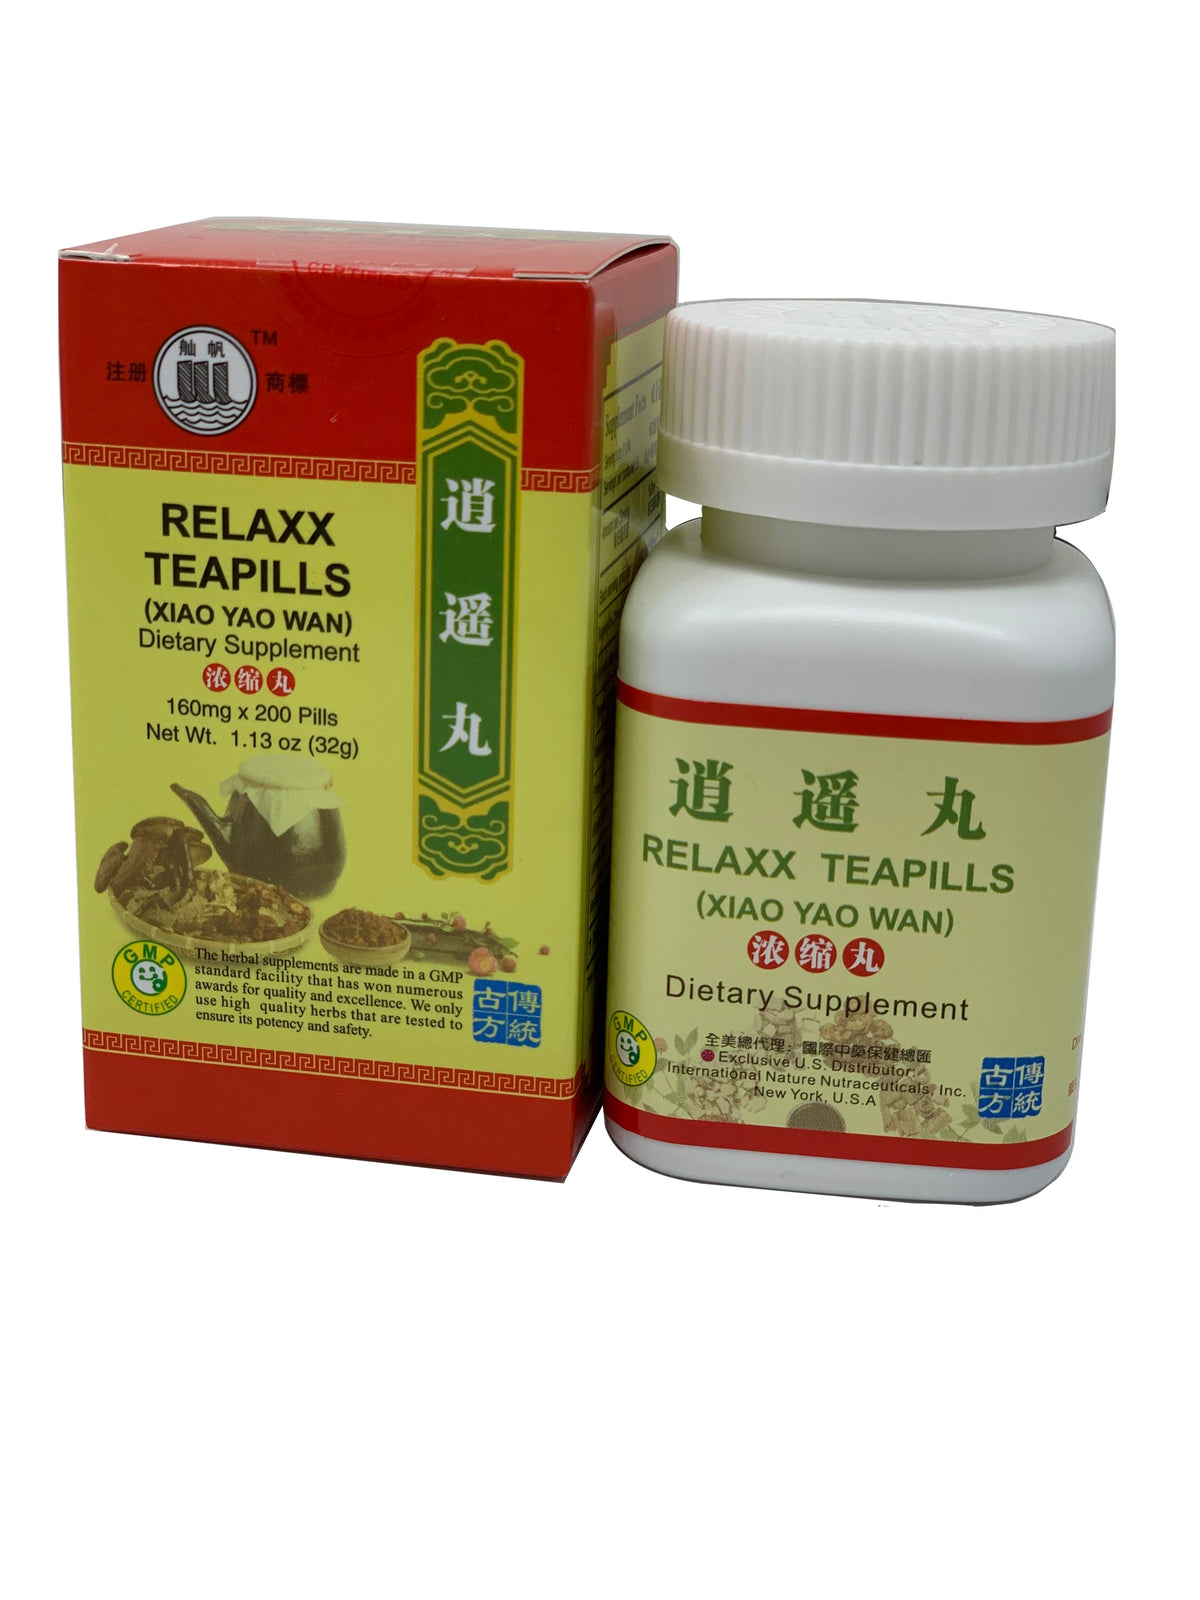 Relaxx TeaPills (Xiao Yao Wan)